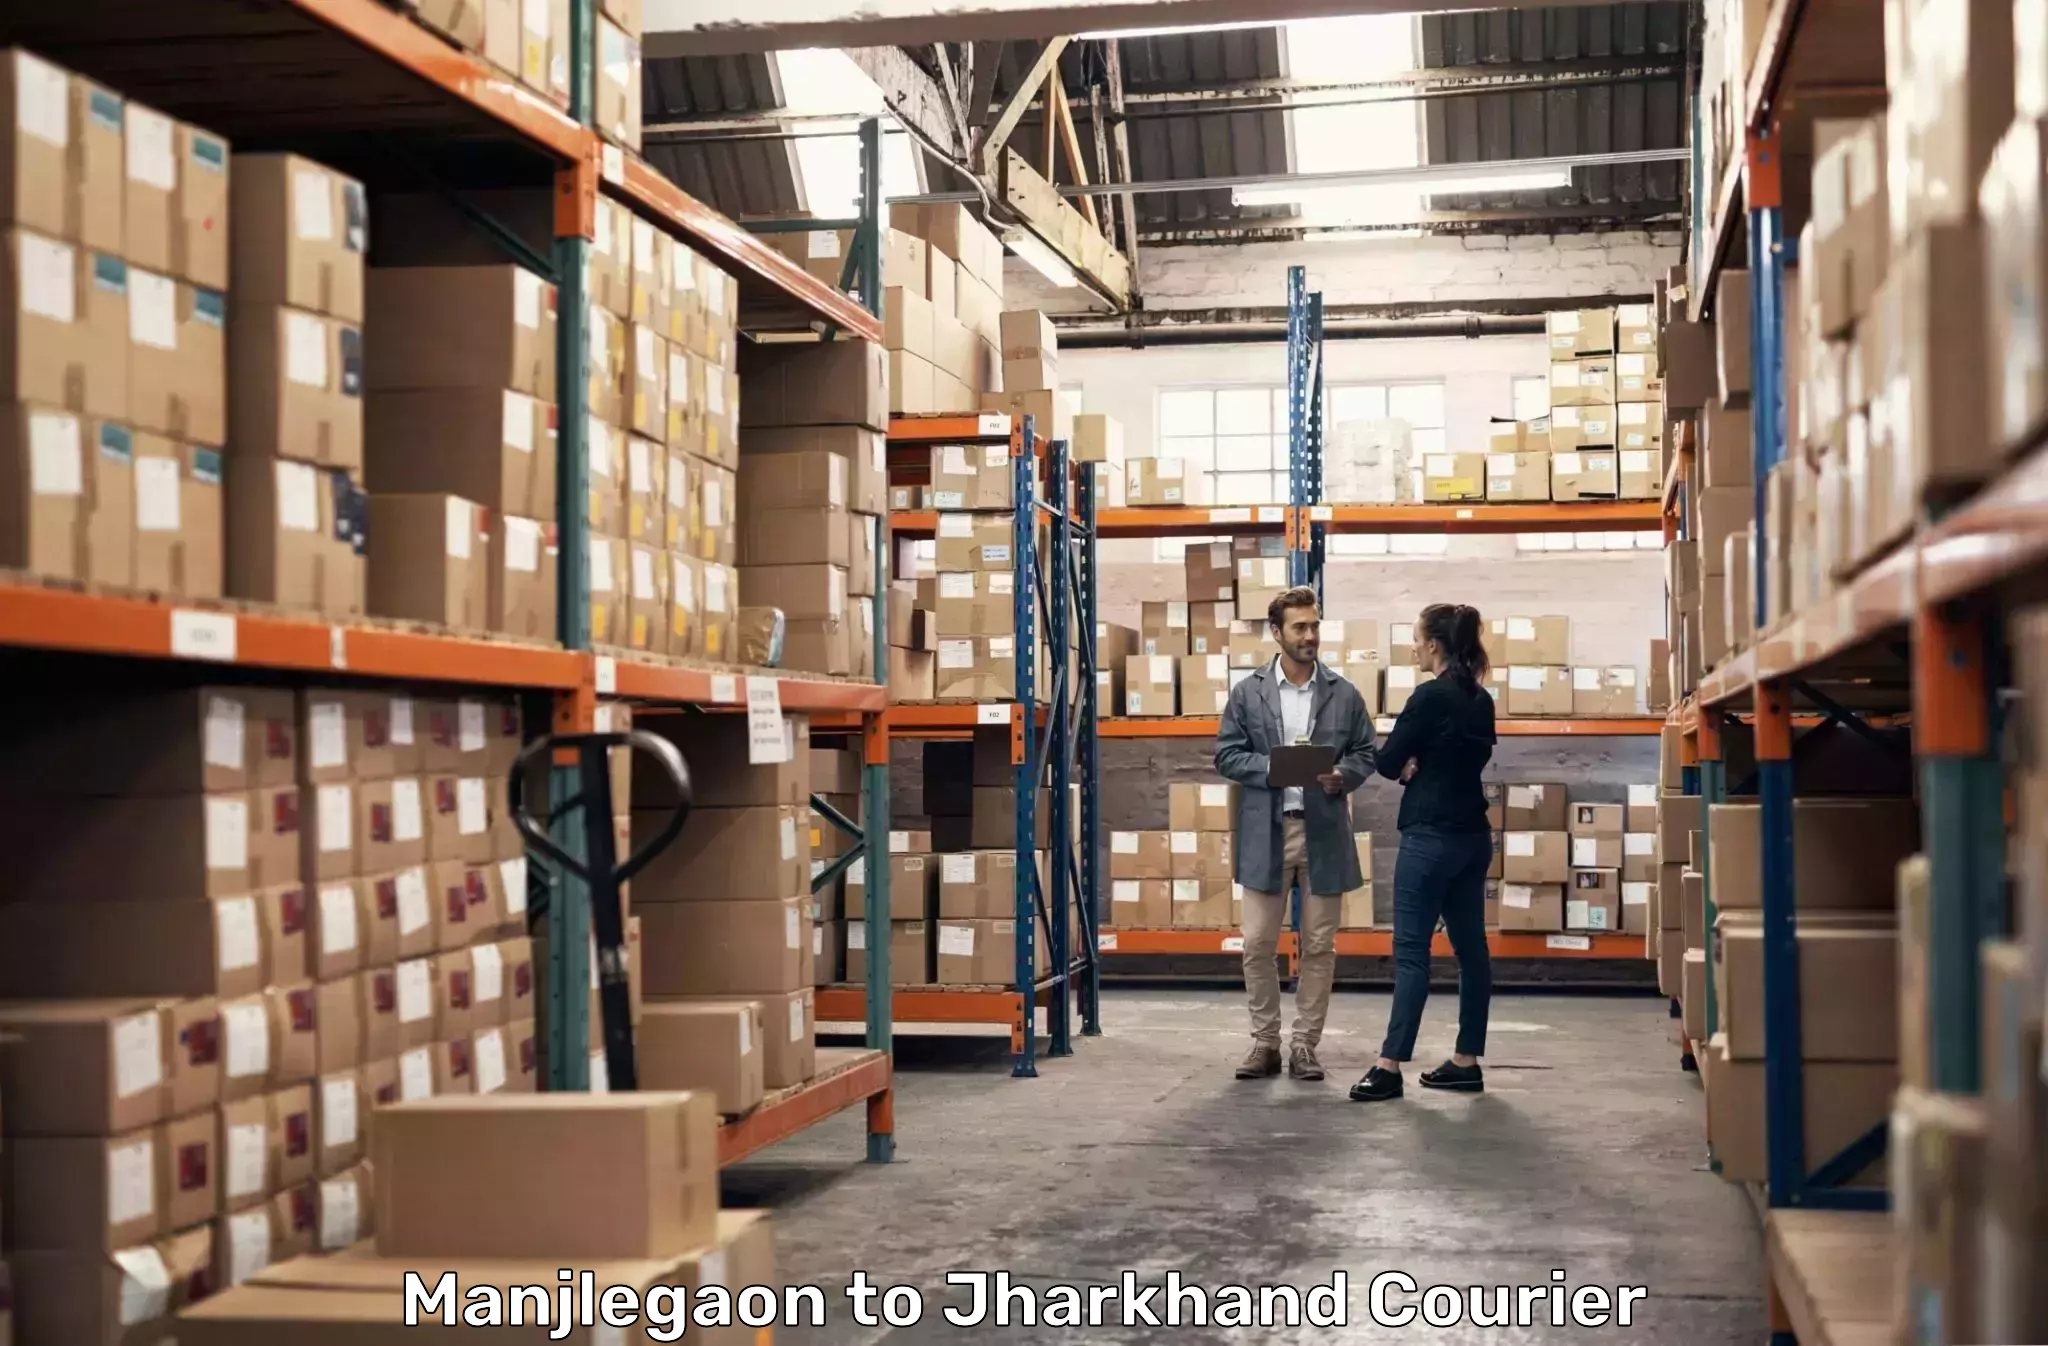 Customer-oriented courier services Manjlegaon to Nagar Untari